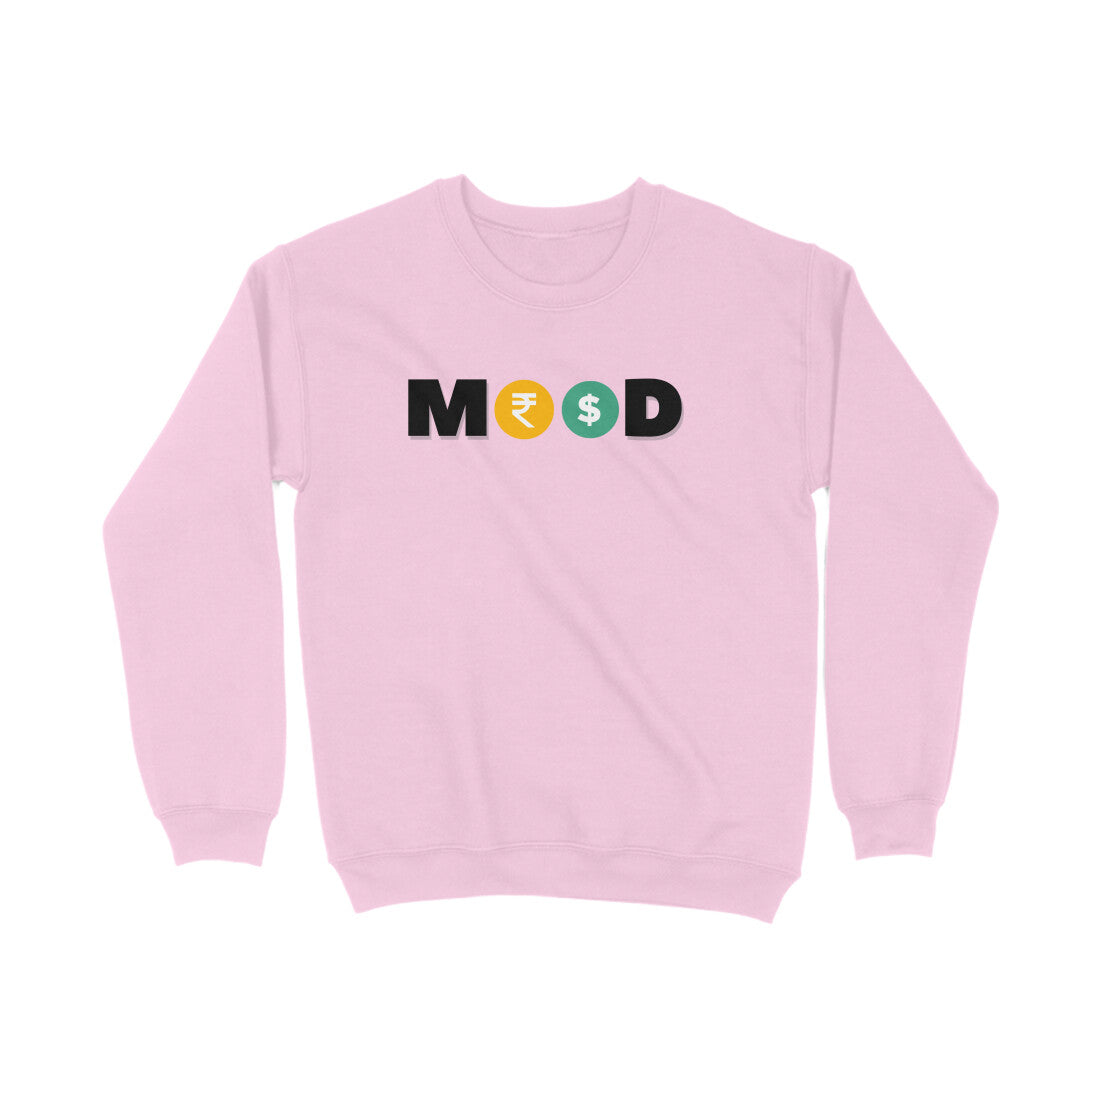 Mood of Money Sweatshirts